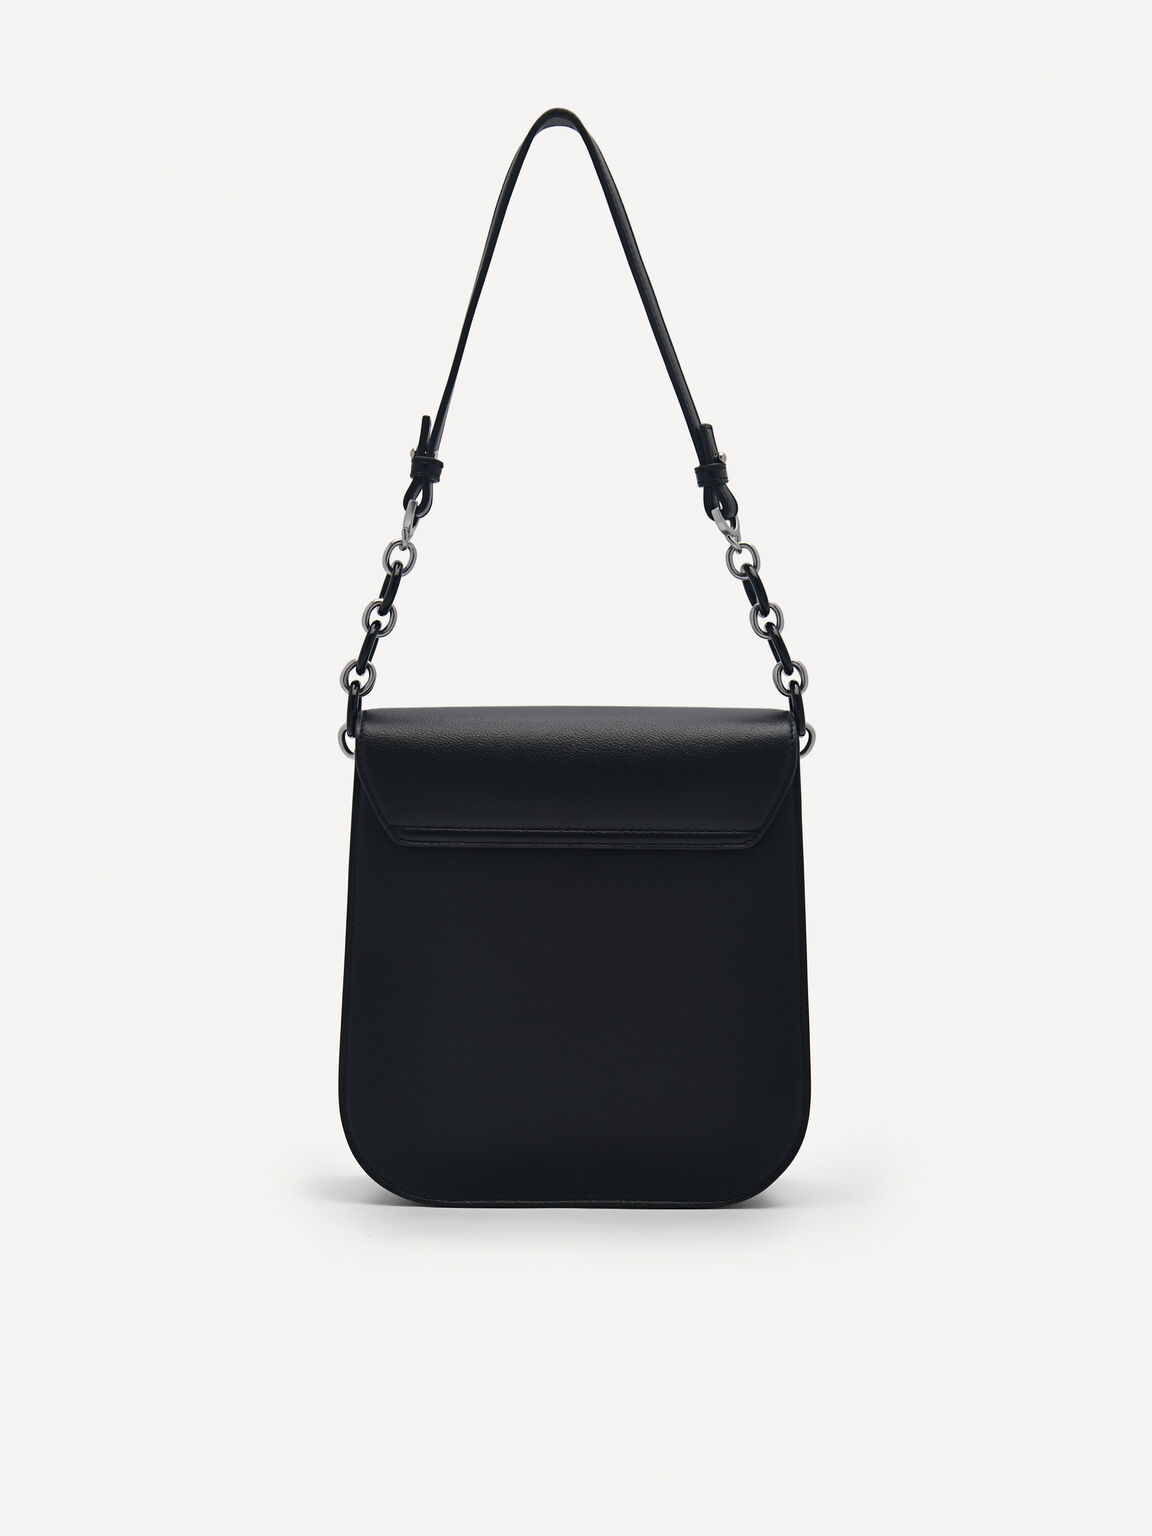 Sydney Shoulder Bag, Black, hi-res